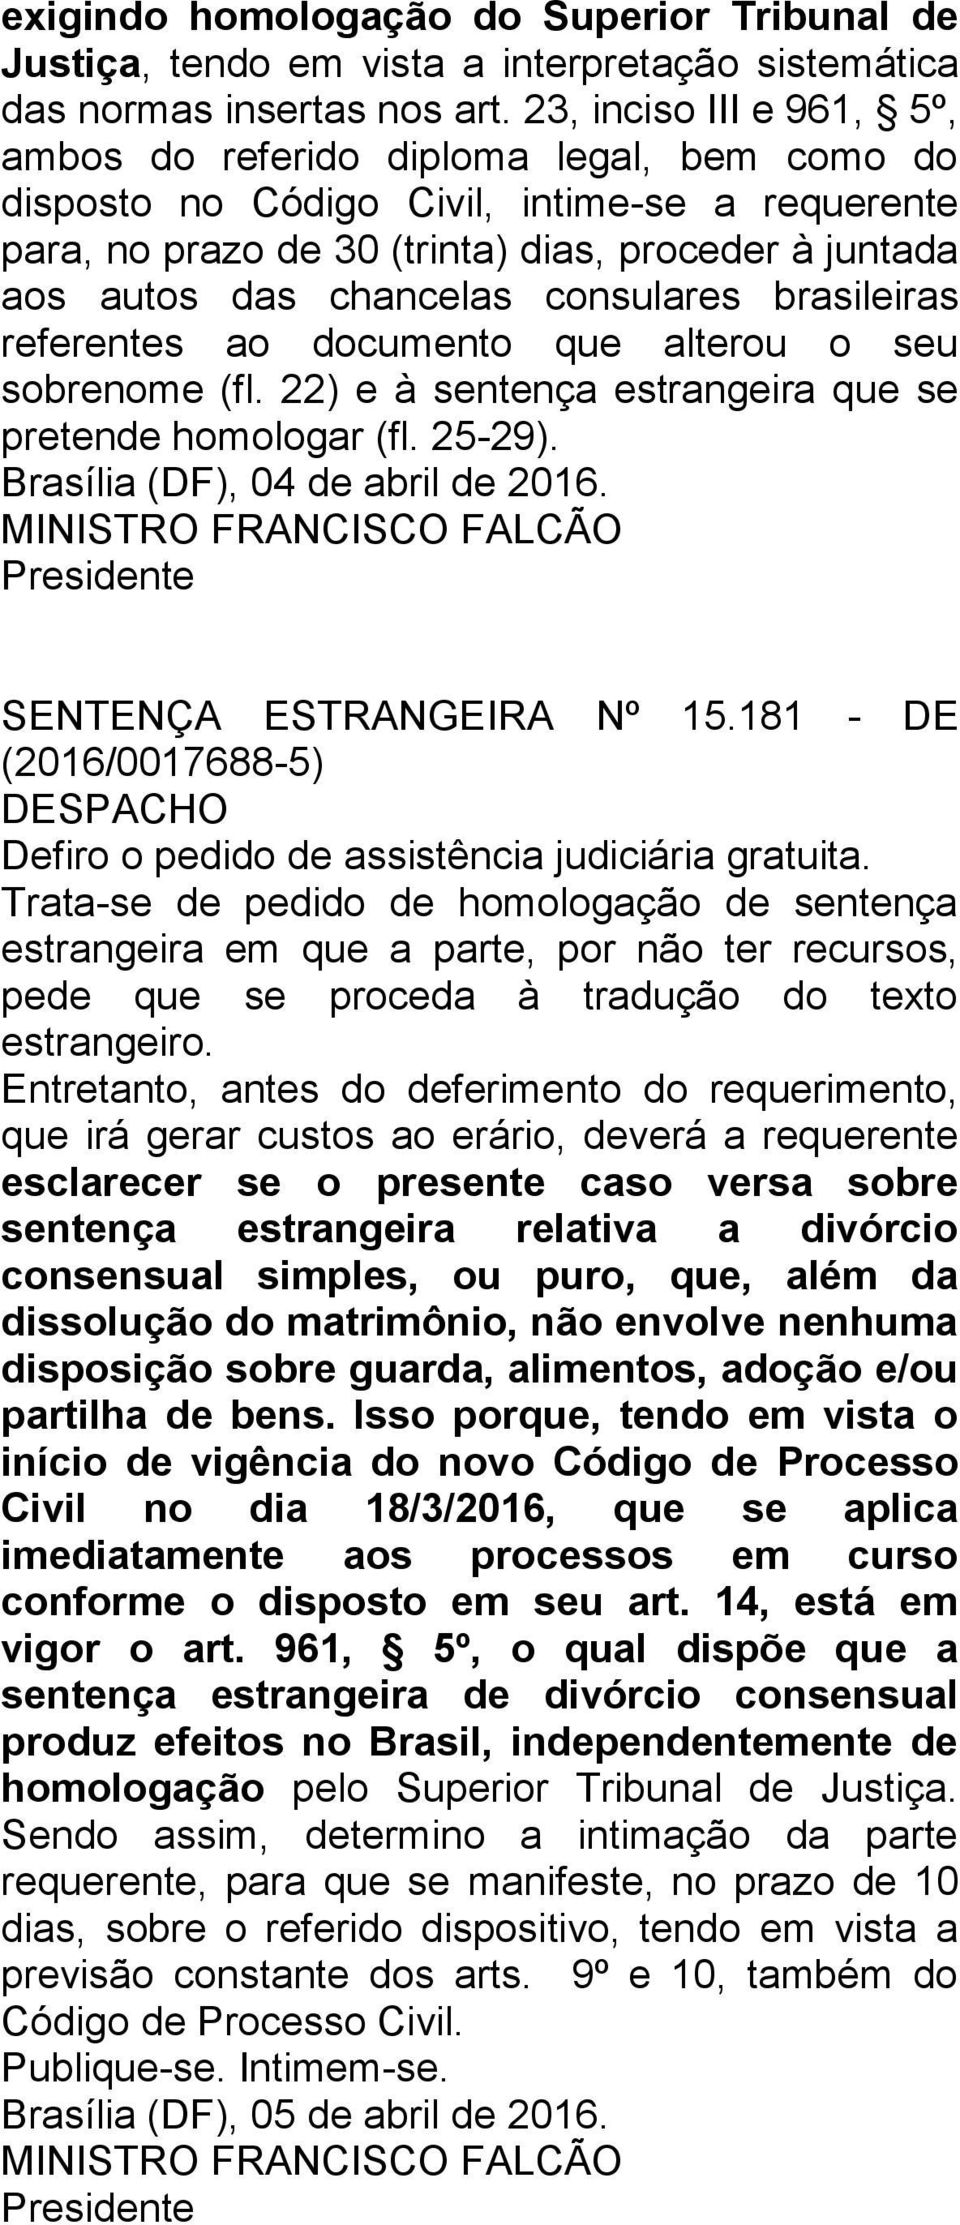 consulares brasileiras referentes ao documento que alterou o seu sobrenome (fl. 22) e à sentença estrangeira que se pretende homologar (fl. 25-29). Brasília (DF), 04 de abril de 2016.